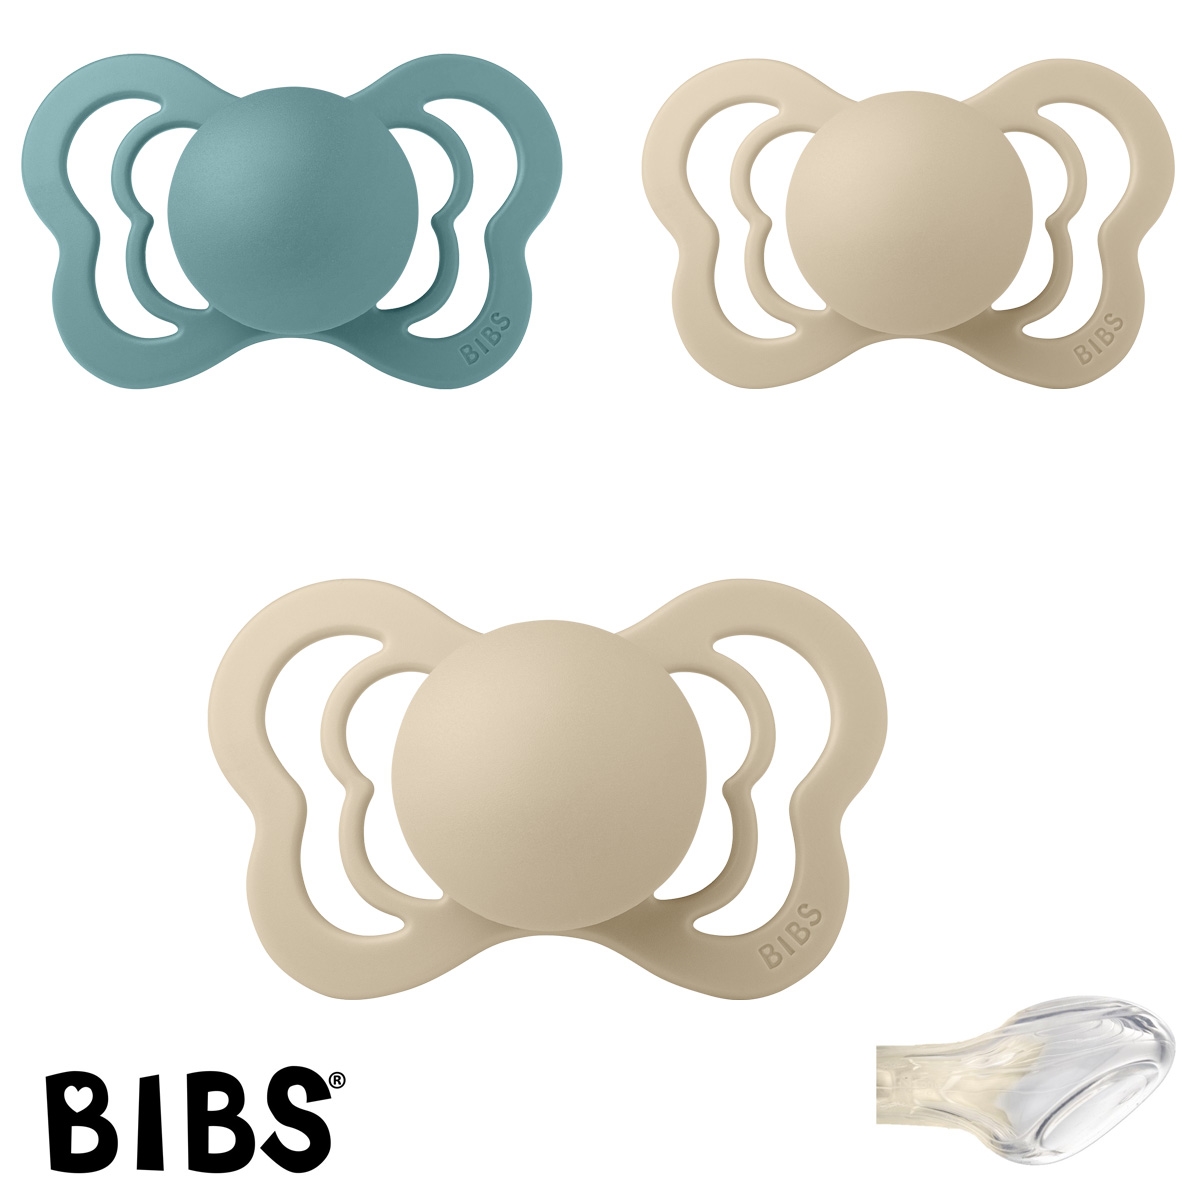 BIBS Couture Sutter med navn str2, 1 Island Sea, 2 Vanilla, Anatomisk Silikone, Pakke med 3 sutter